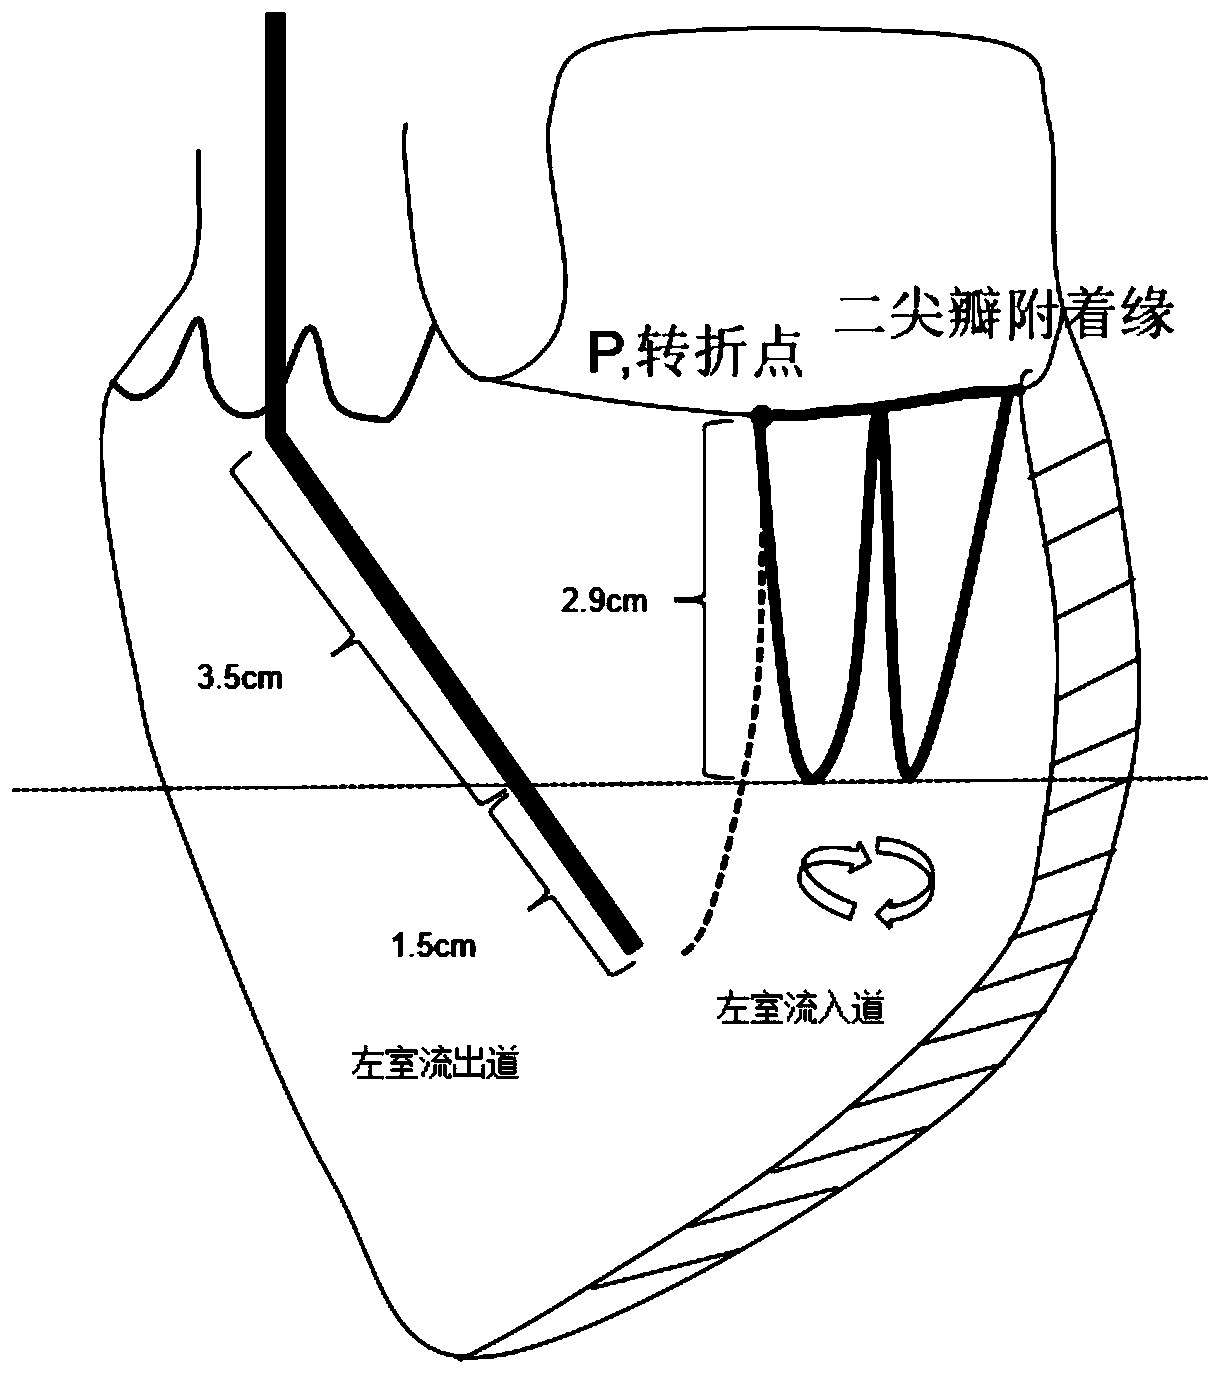 Percutaneous left heart drainage tube